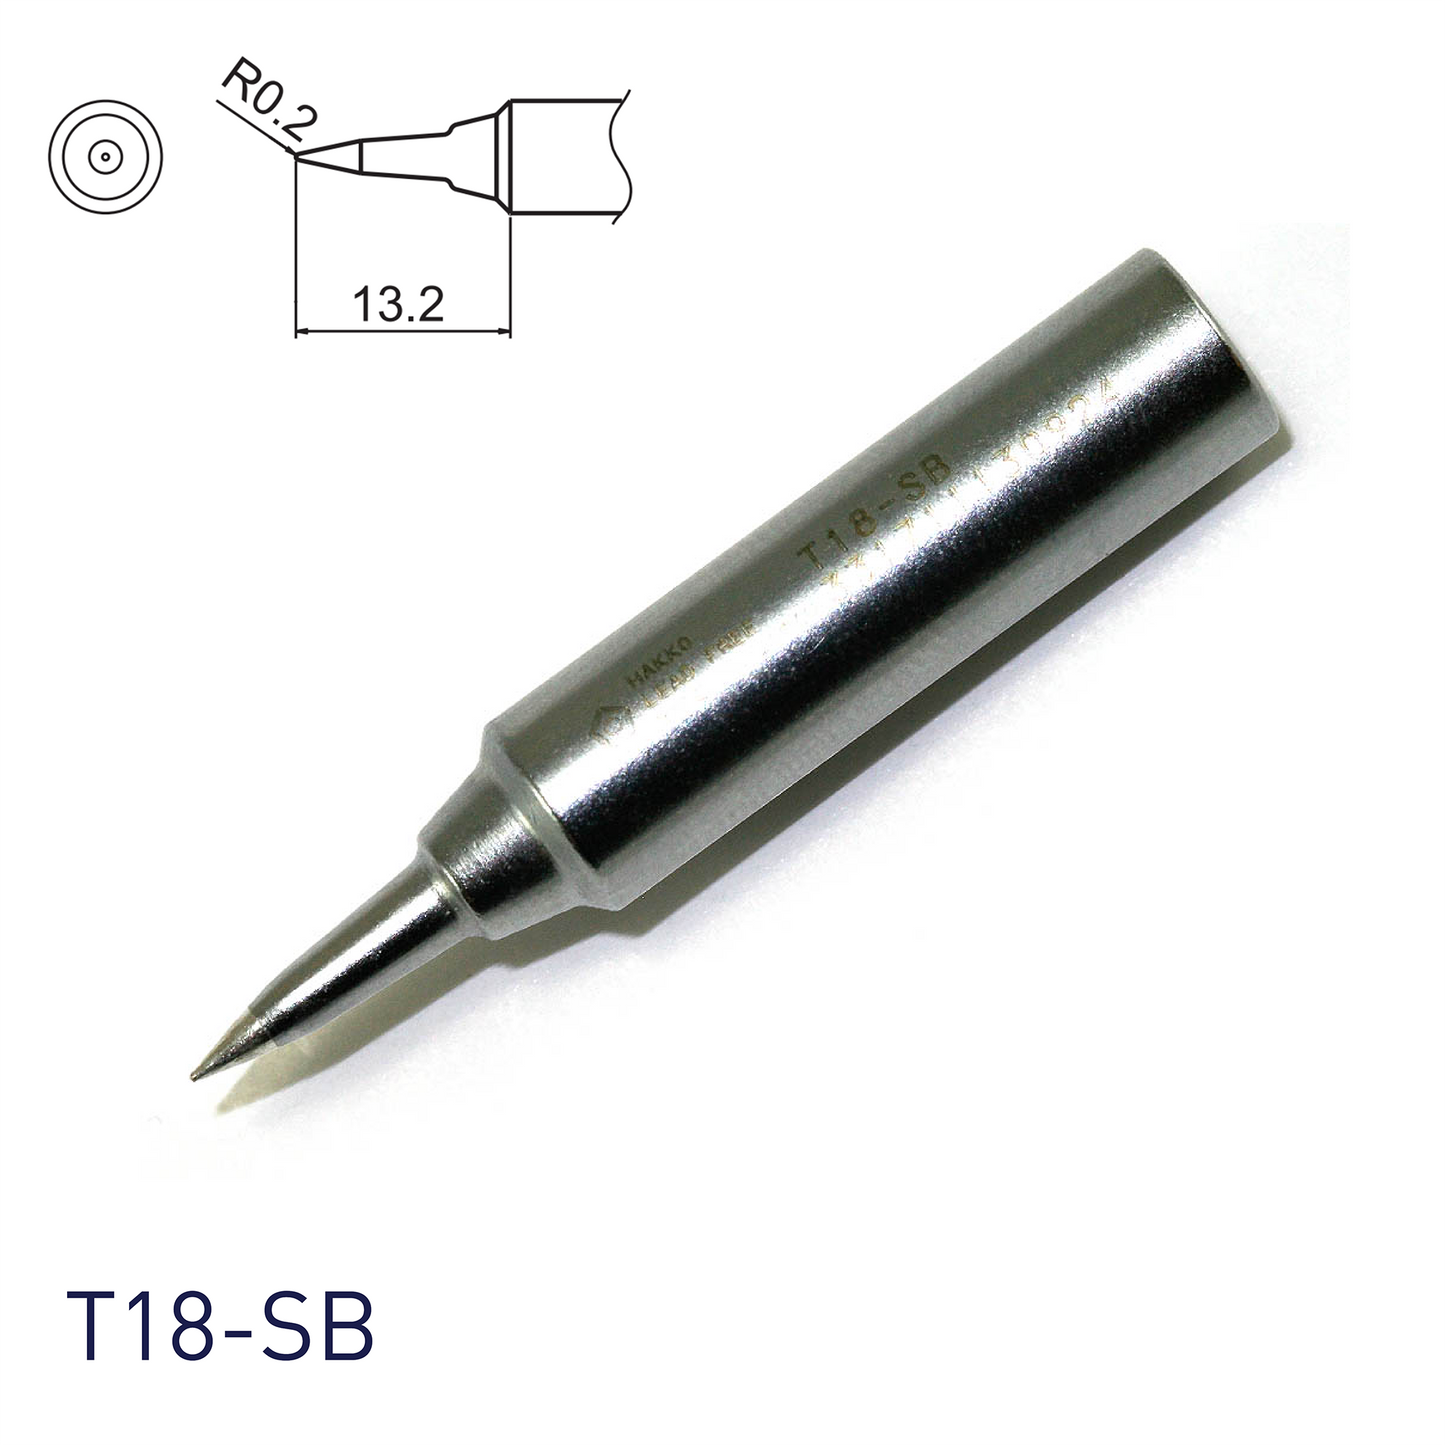 Hakko soldering iron tip T18-SB for soldering station FX888, FX888D, FX889, FR701, FR702, FX600 & soldering iron FX8801, FX600